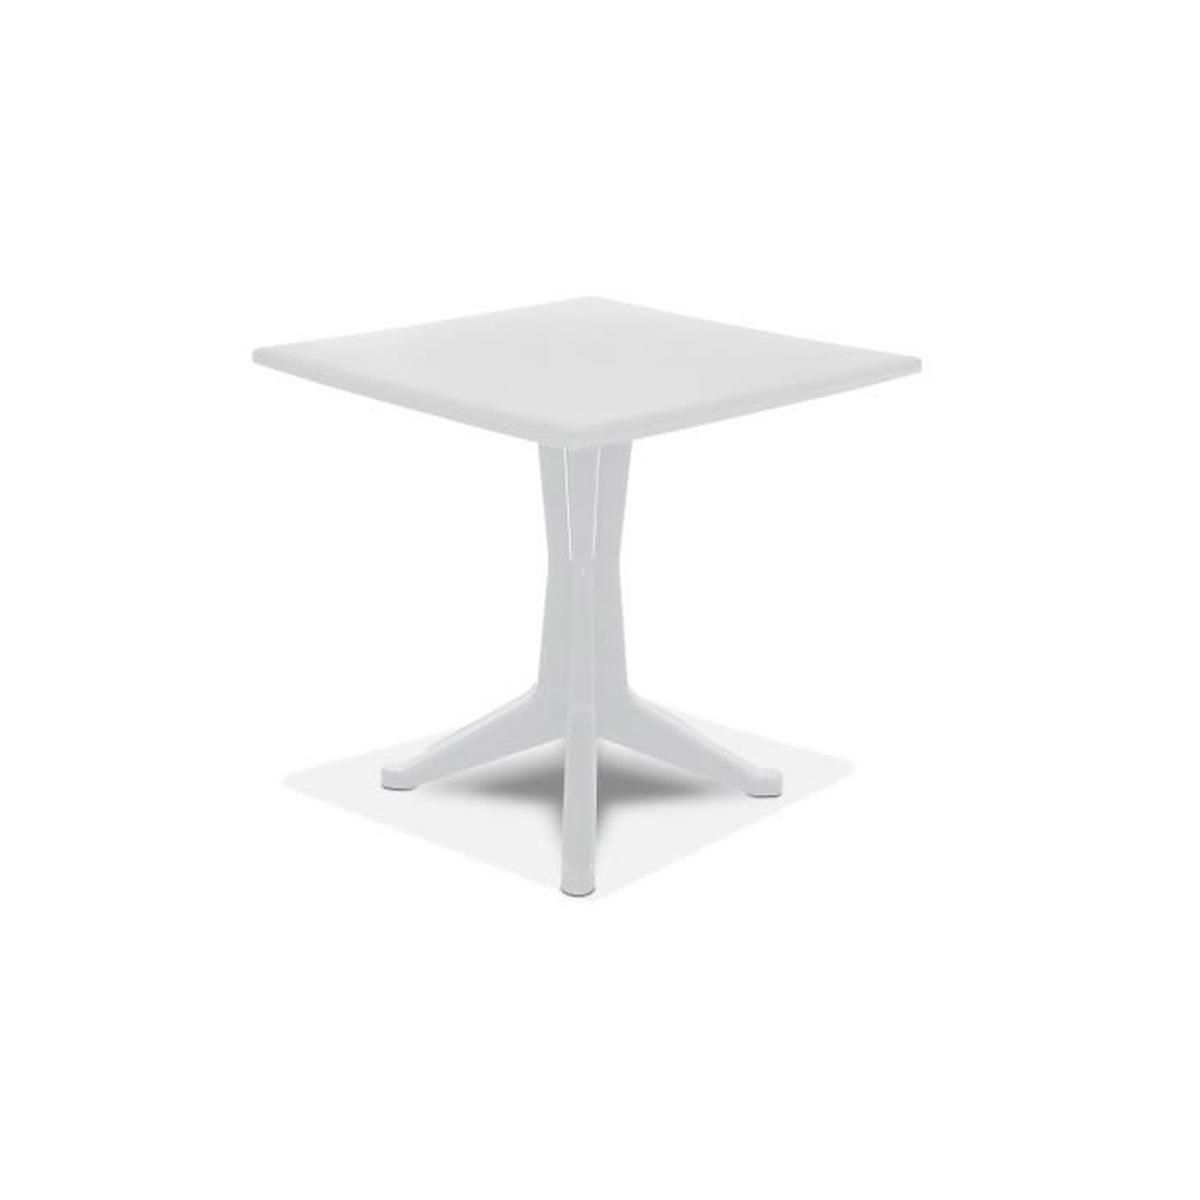 Table De Jardin Carrée En Plastique Blanc - Achat / Vente ... destiné Table De Jardin Plastique Blanc